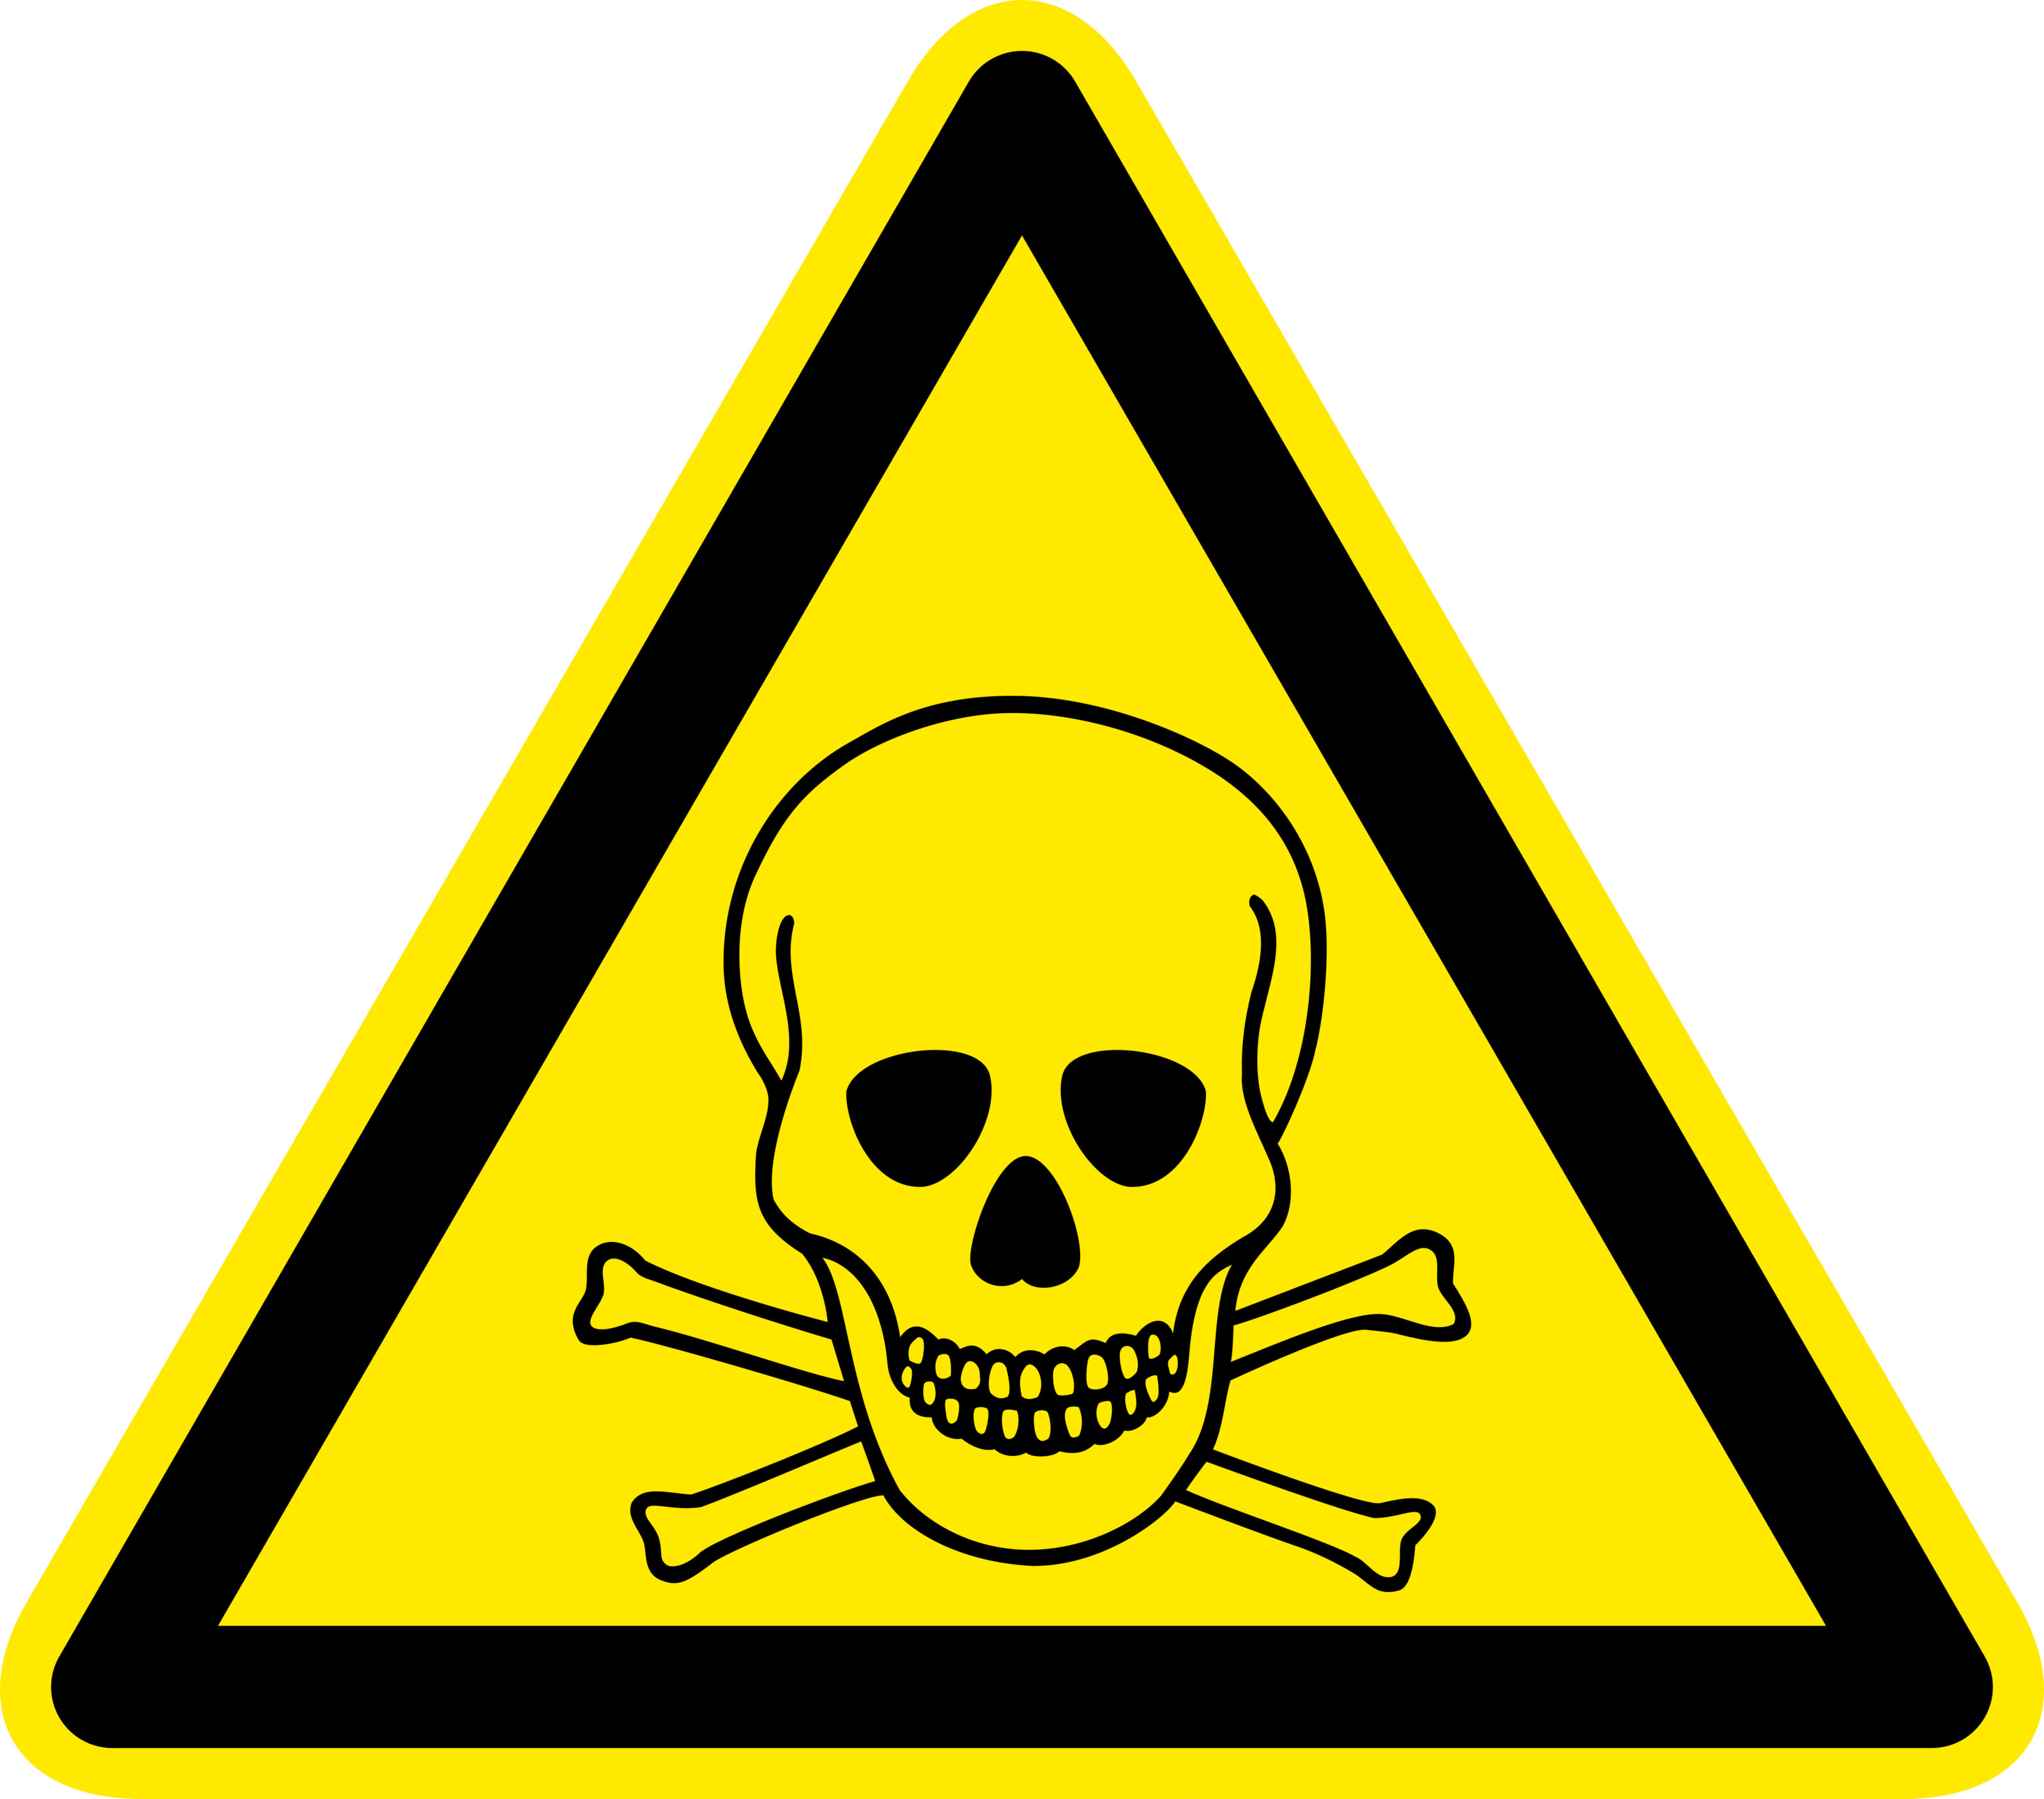 Warnsymbol: Schwarzes Symbol eines Totenkopfes auf gekreuzten Knochen eingefasst von schwarzlinigem Dreieck auf grellgelben Hintergrund